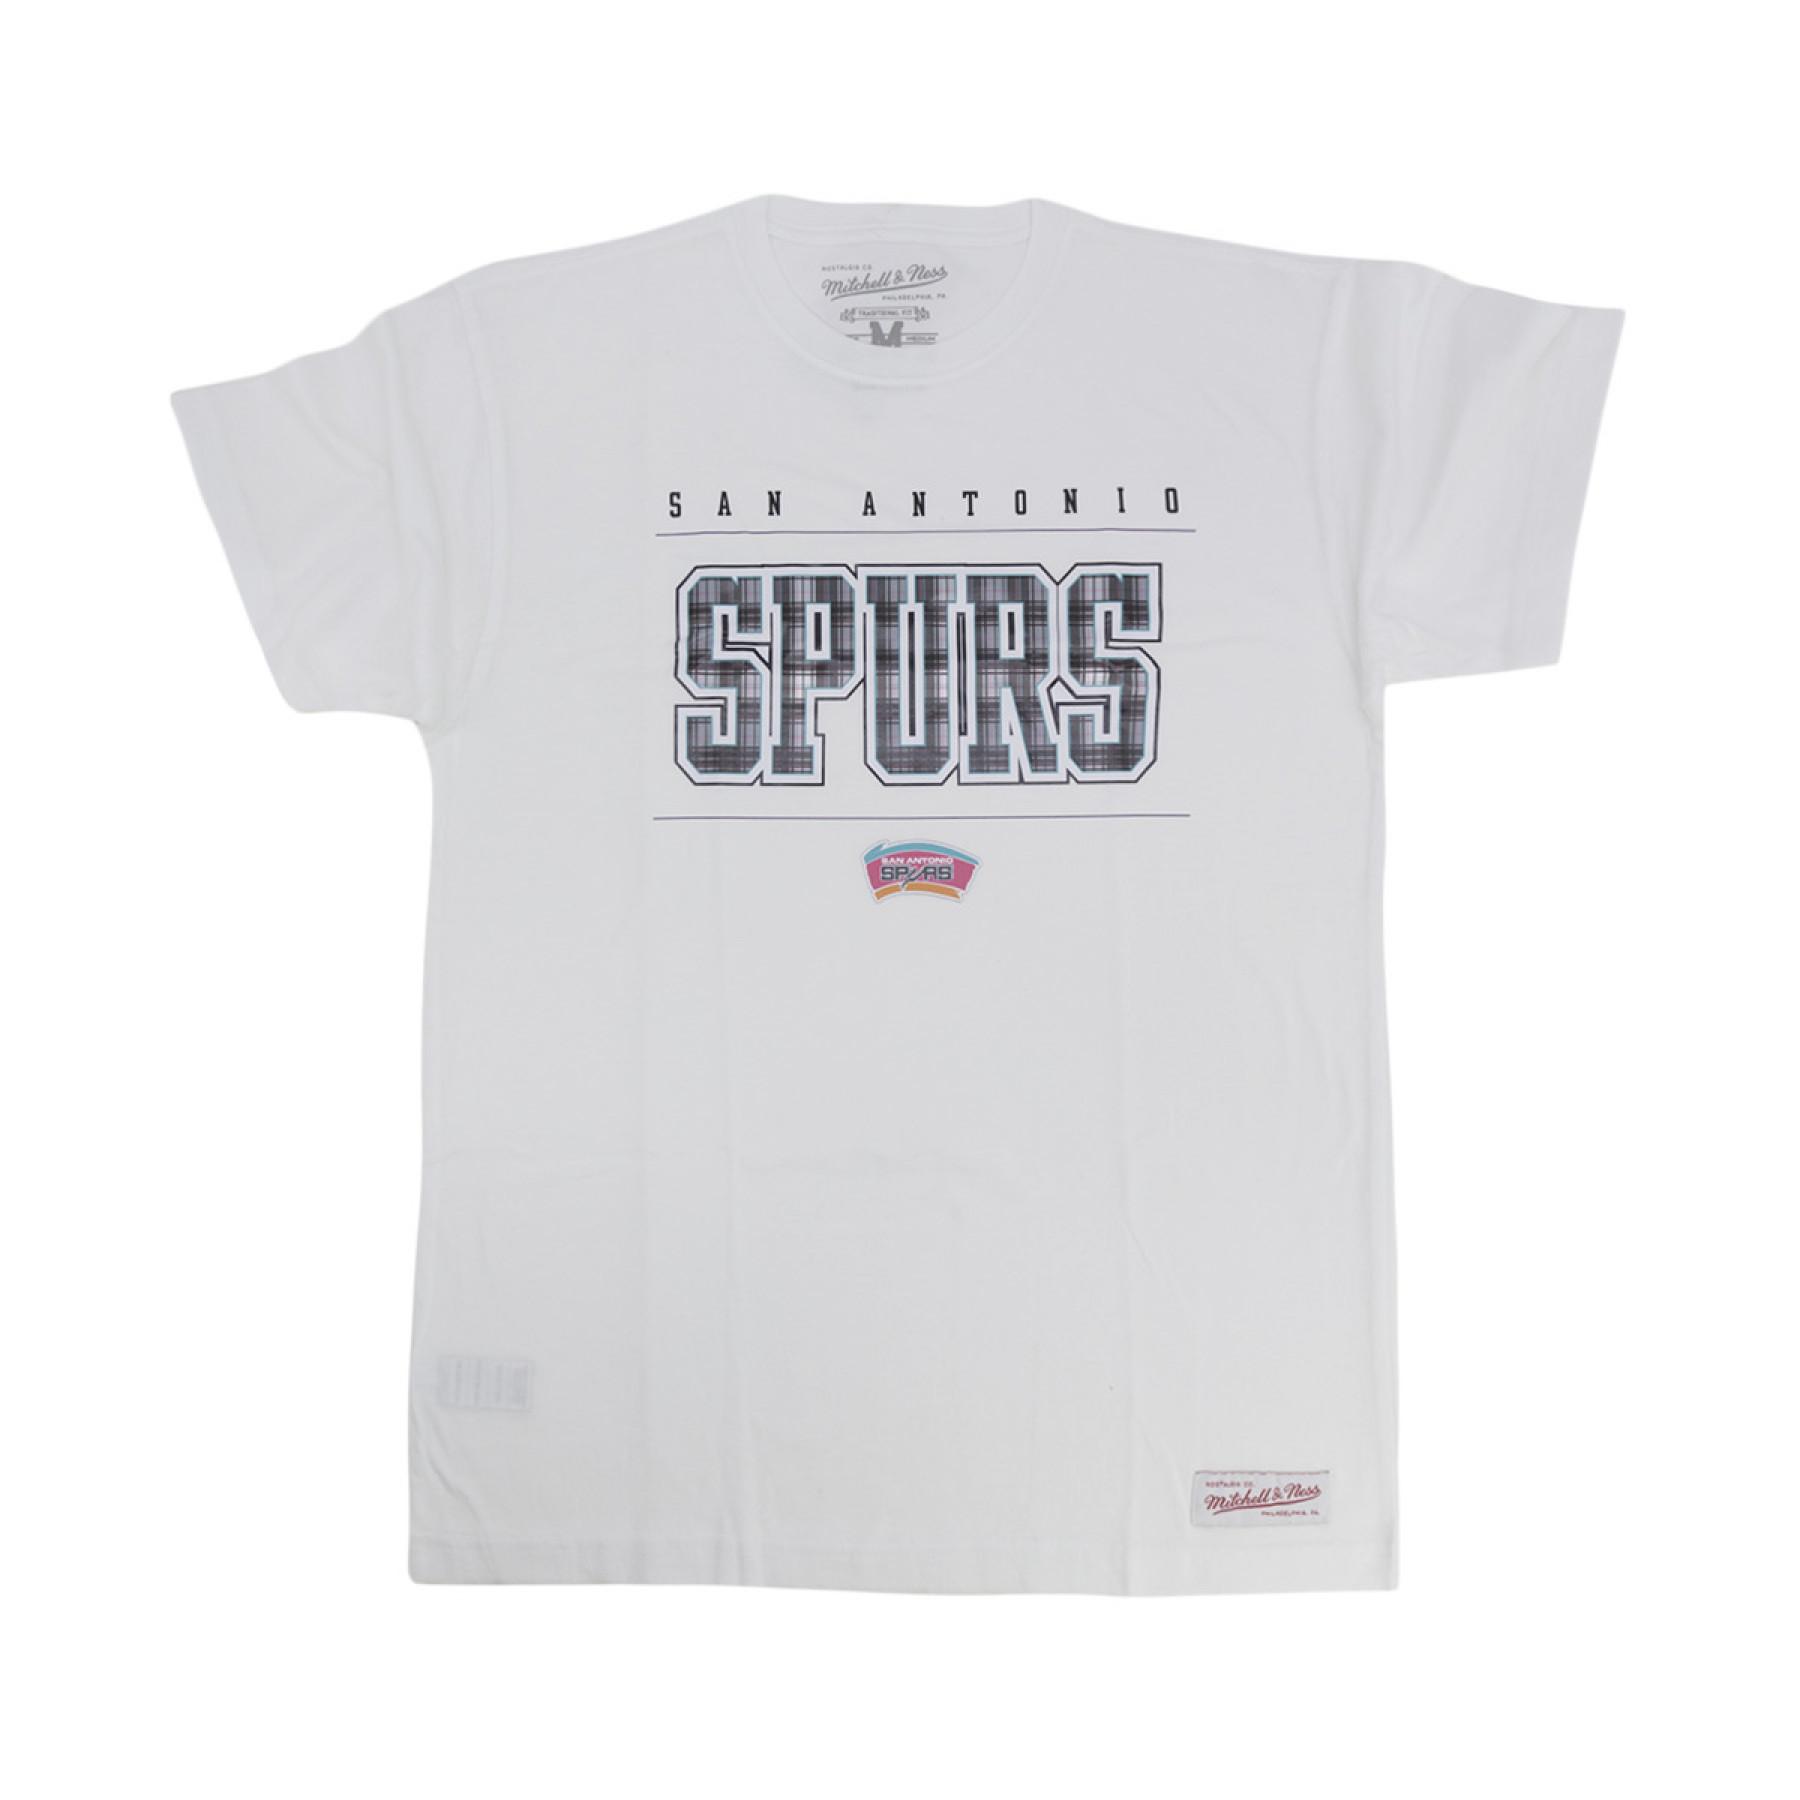 Camiseta San Antonio Spurs private school team